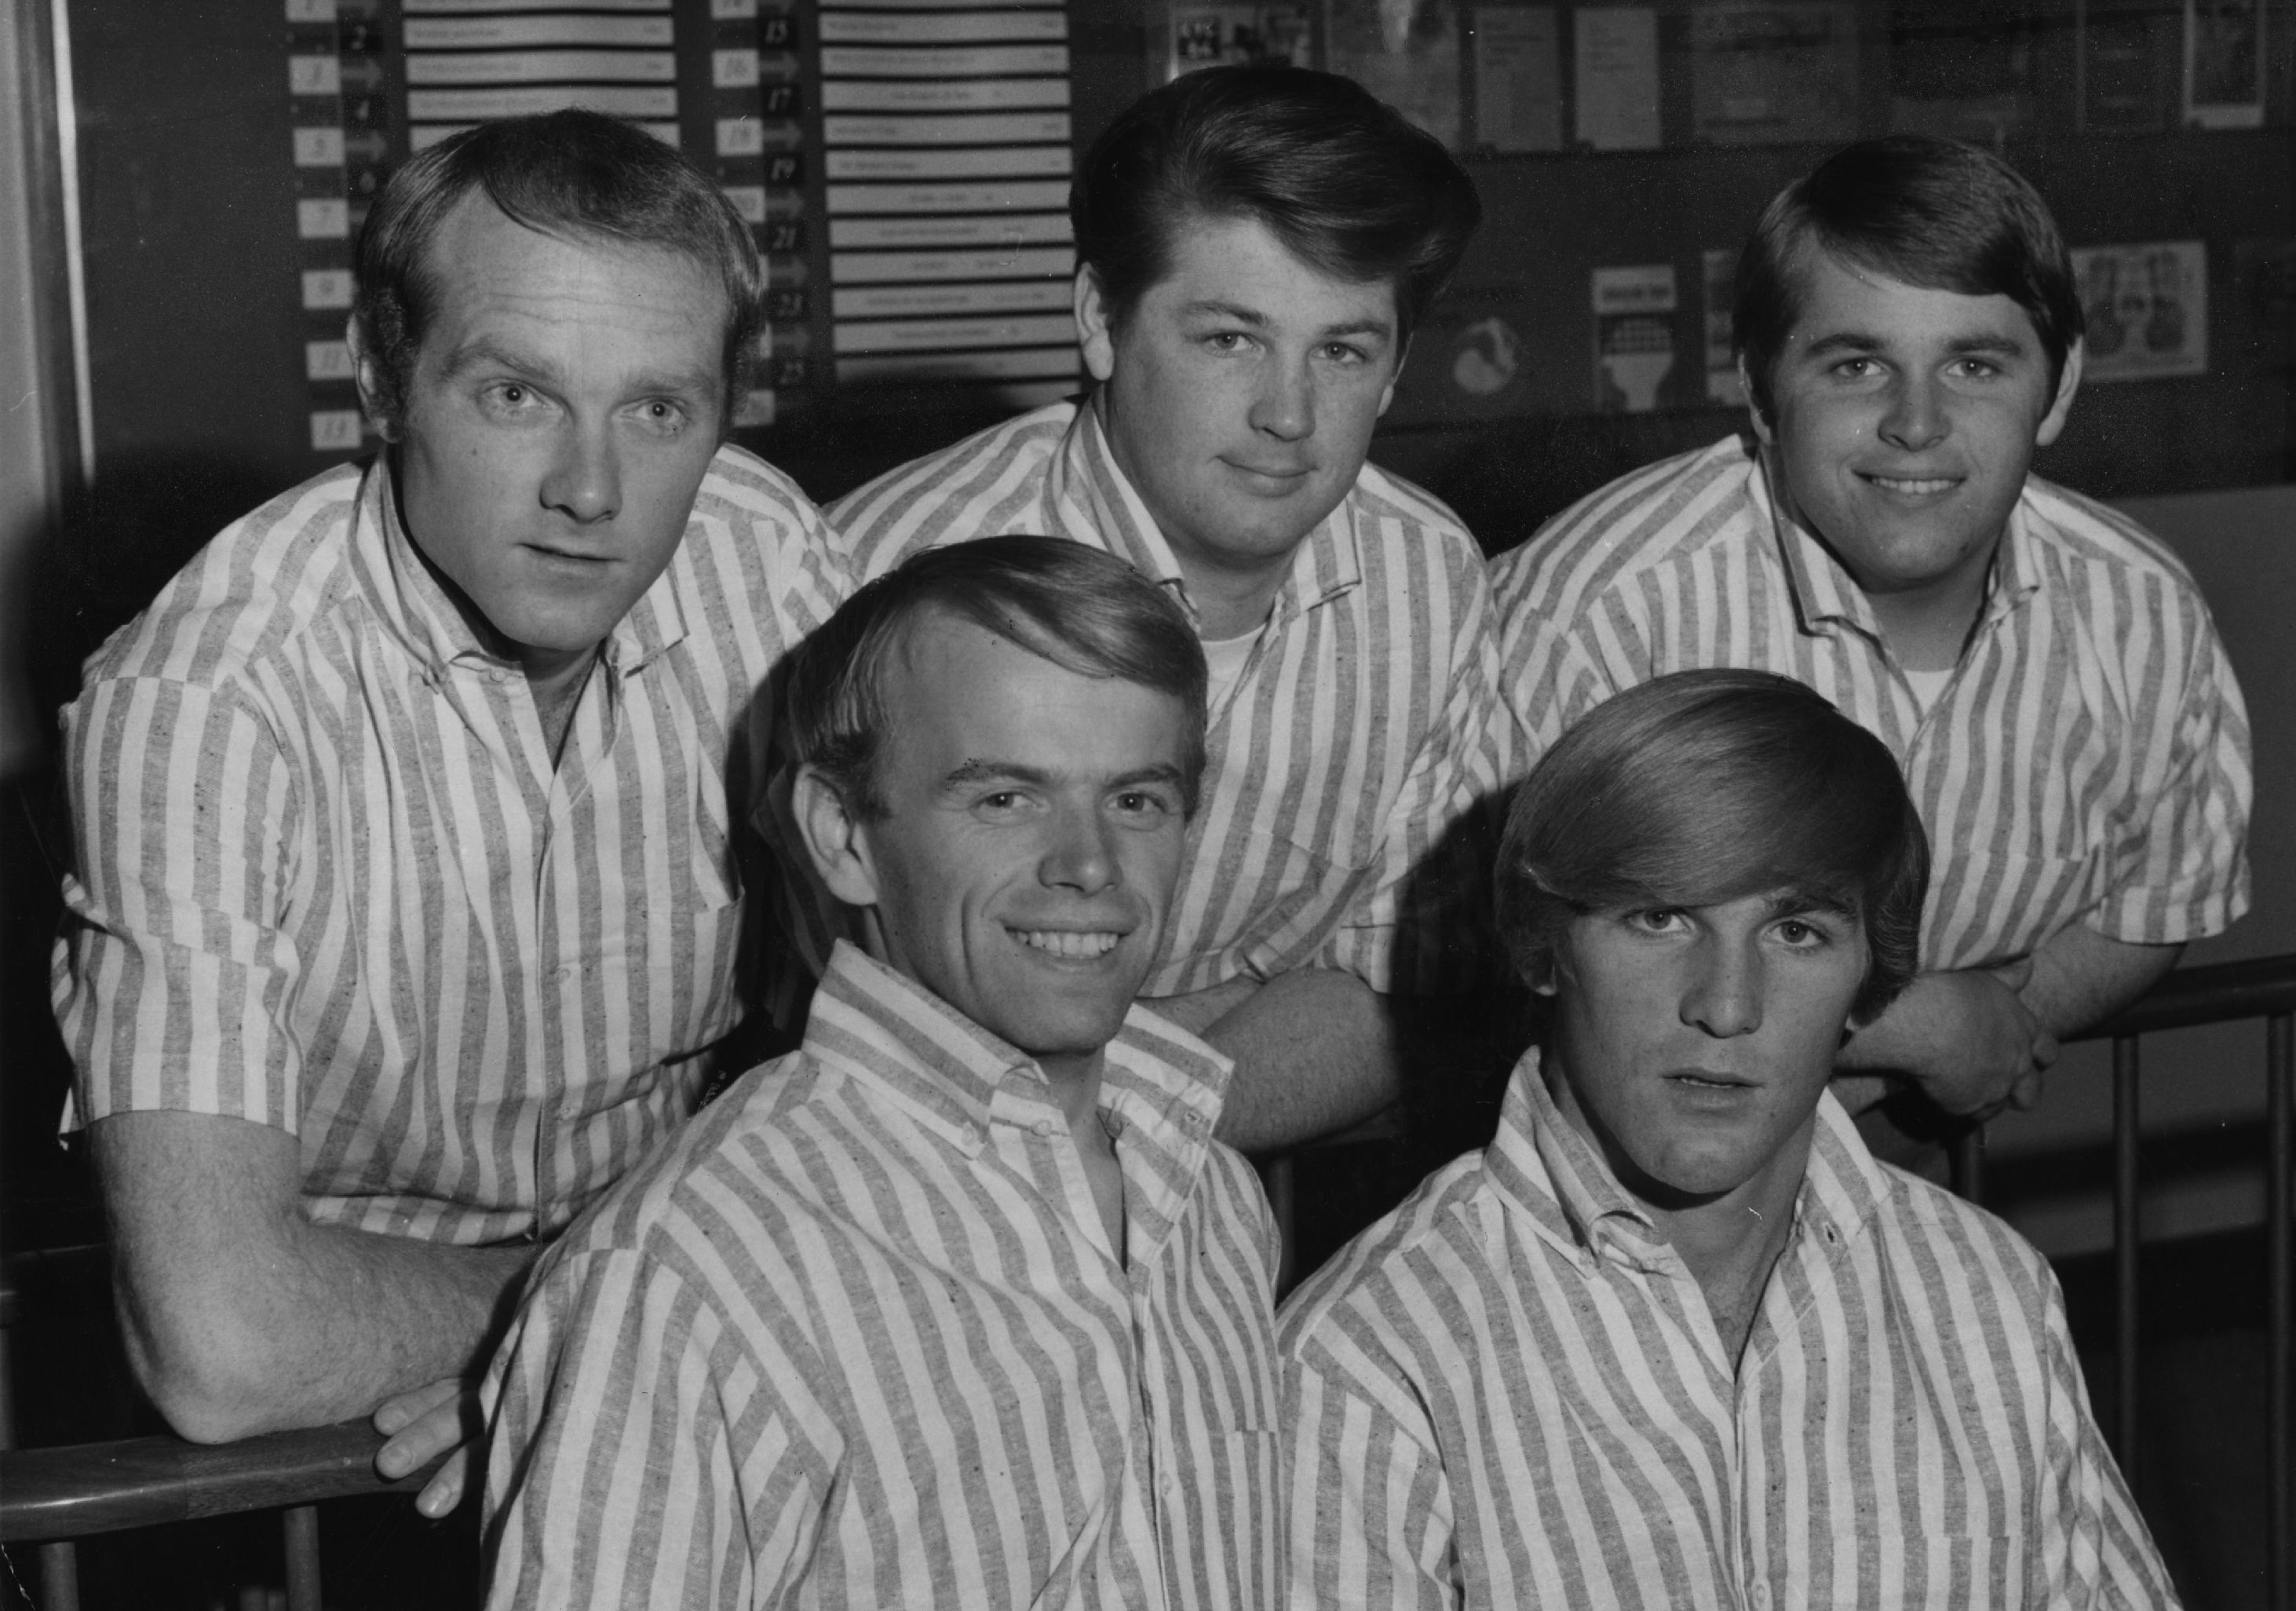 The Beach Boys wearing striped shirts during the "Barbara Ann" era 